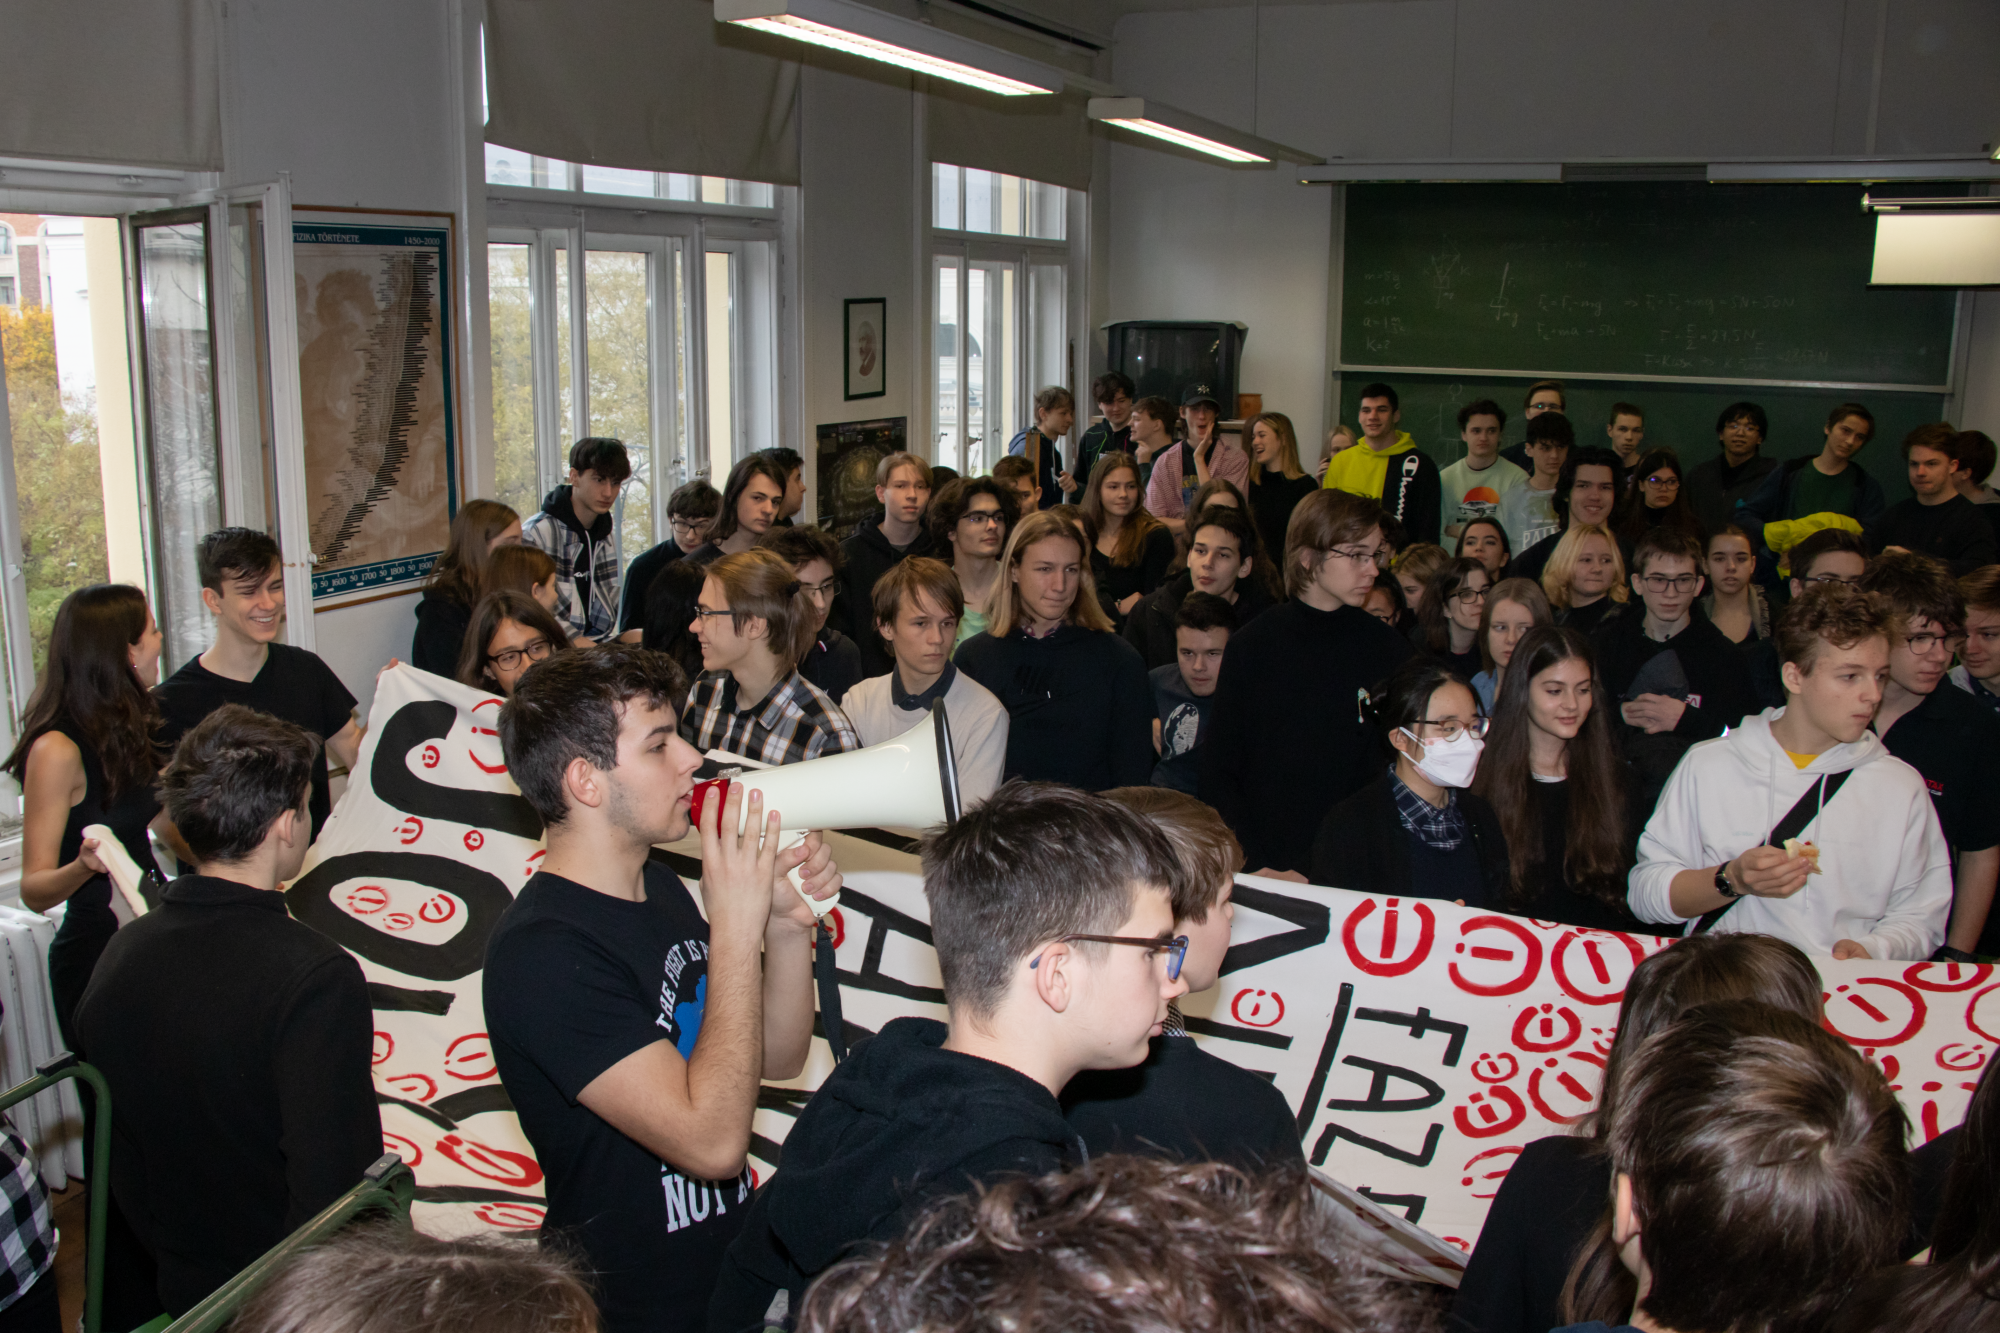 Így néz ki, amikor több száz diák sztrájkol a Fazekas Mihály Gimnáziumban